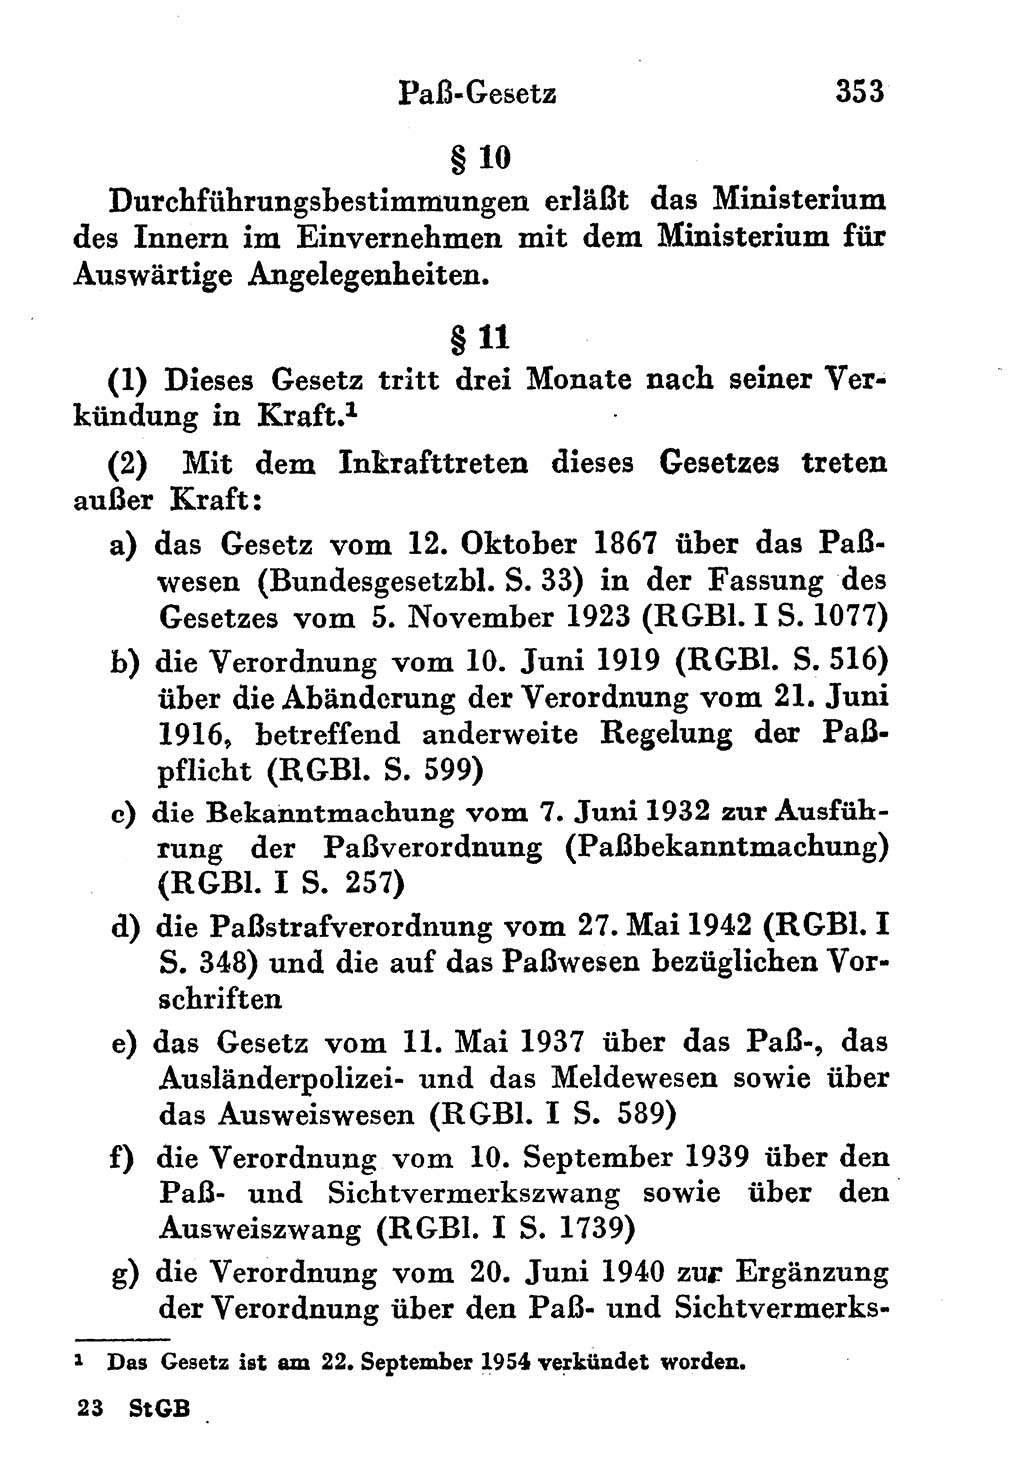 Strafgesetzbuch (StGB) und andere Strafgesetze [Deutsche Demokratische Republik (DDR)] 1956, Seite 353 (StGB Strafges. DDR 1956, S. 353)